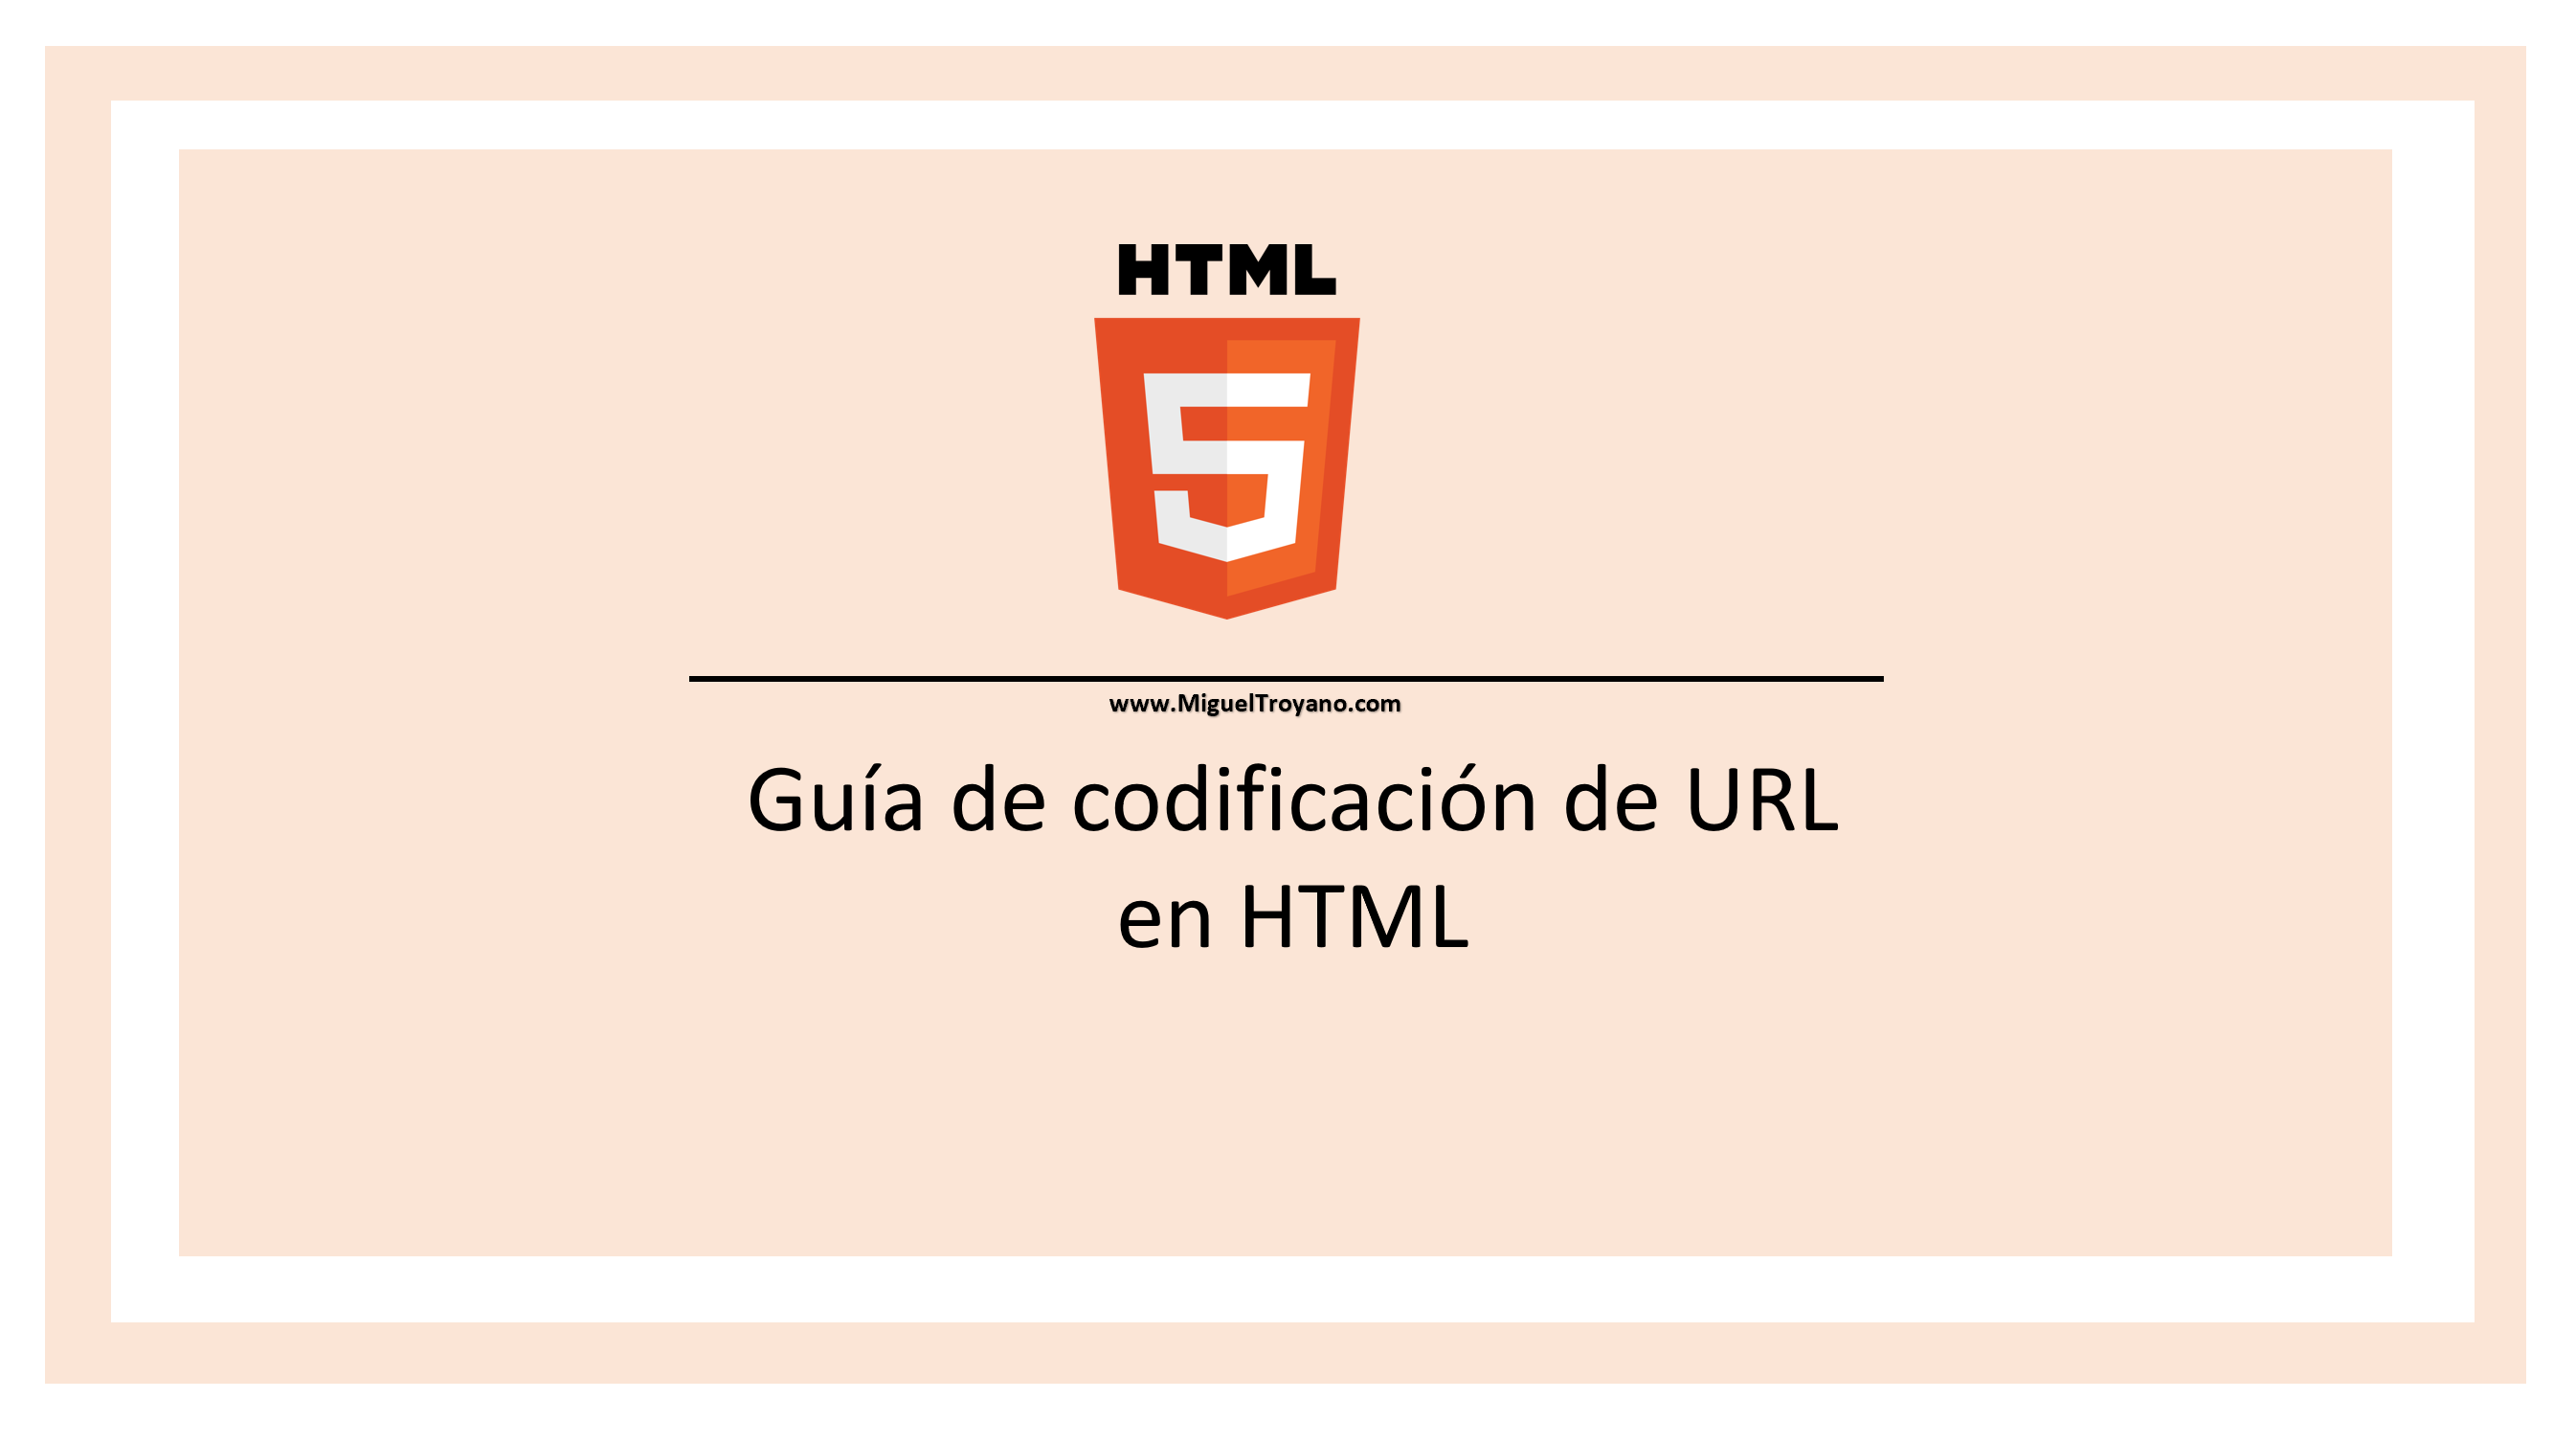 Guía de codificación URL en HTML